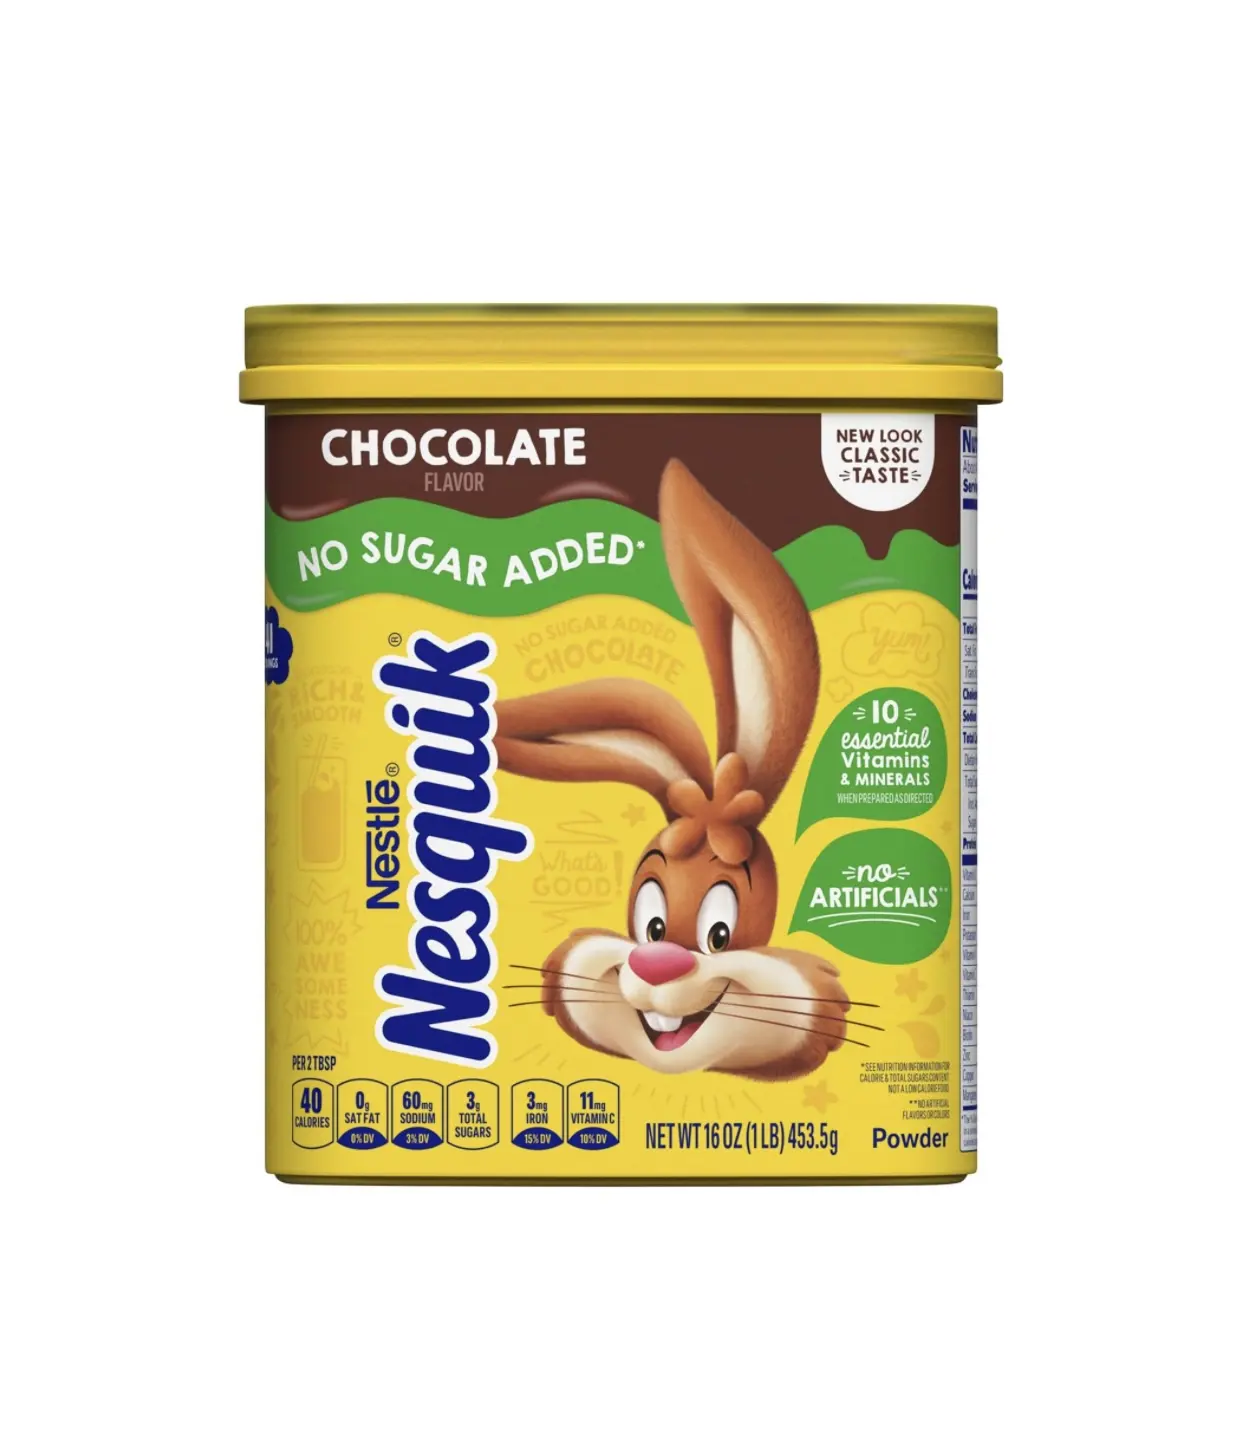 Premium Verkopende Nestle Nesquik Geen Met Suiker Toegevoegde Chocoladepoeder, Maakt Instant Originele Chocolademelk 16 Oz Jerrycans (453G)